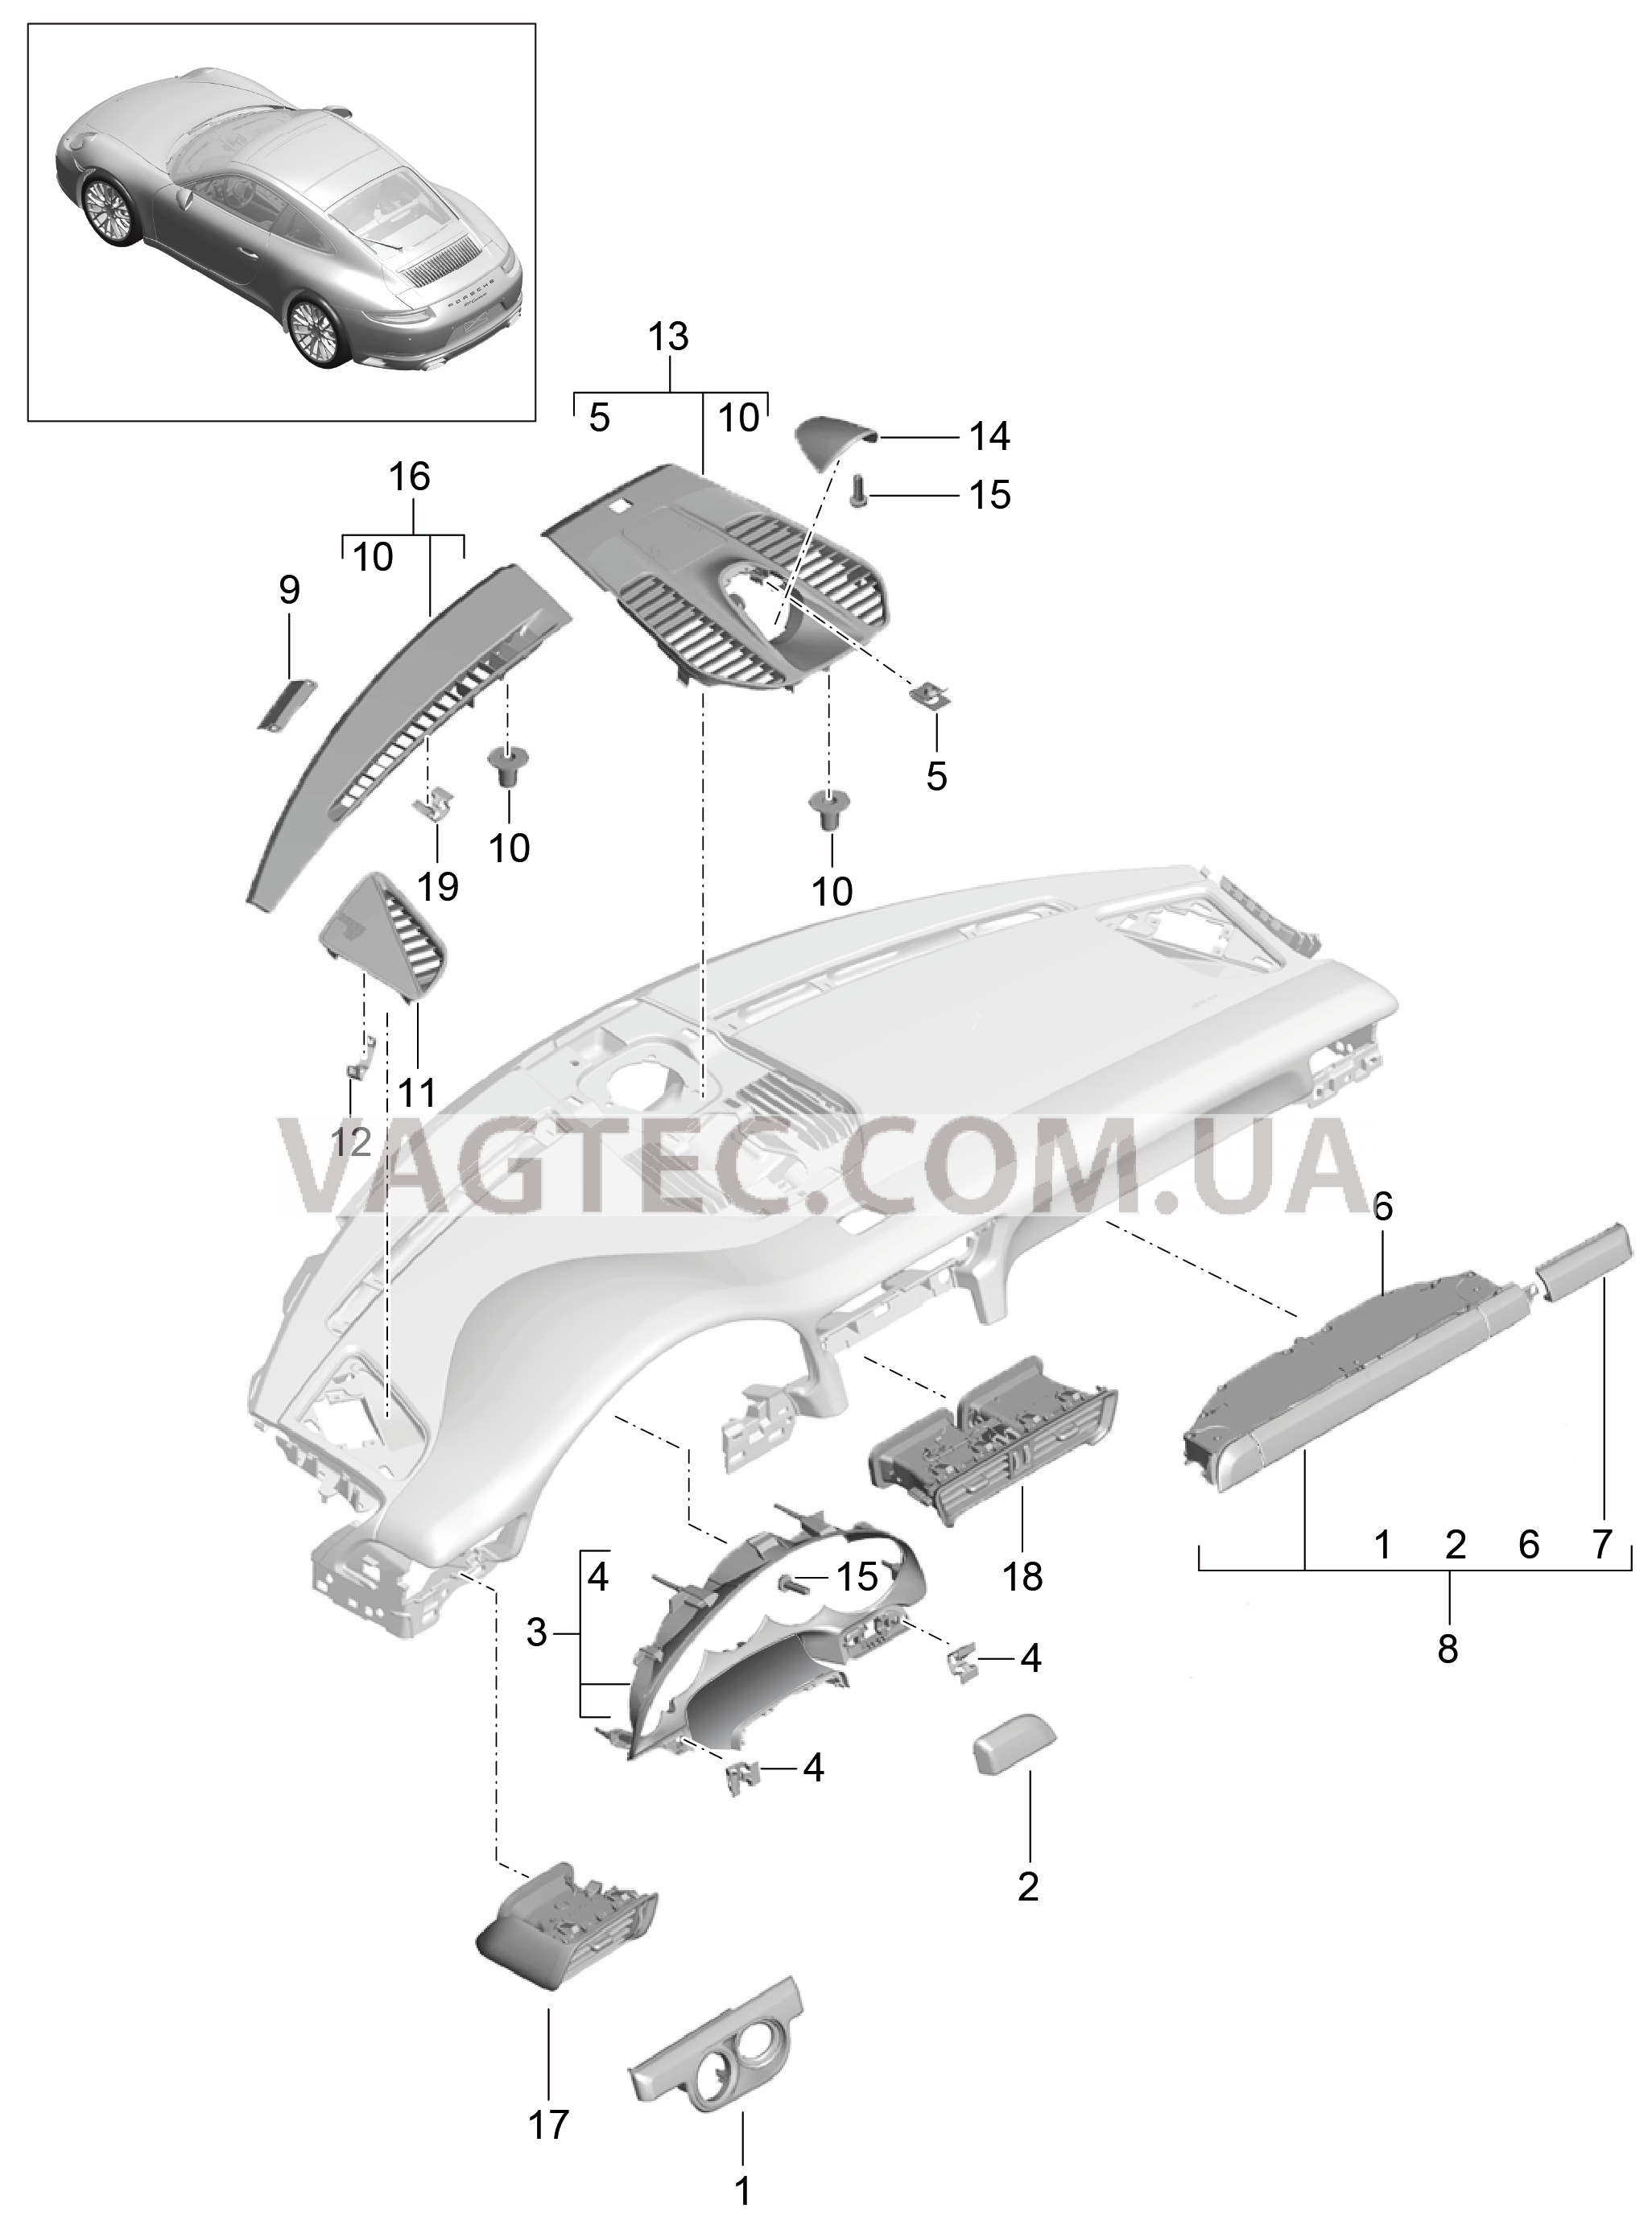 809-005 Детали, Облицовка передней панели, Верхняя часть для PORSCHE 911.Carrera 2017-2018